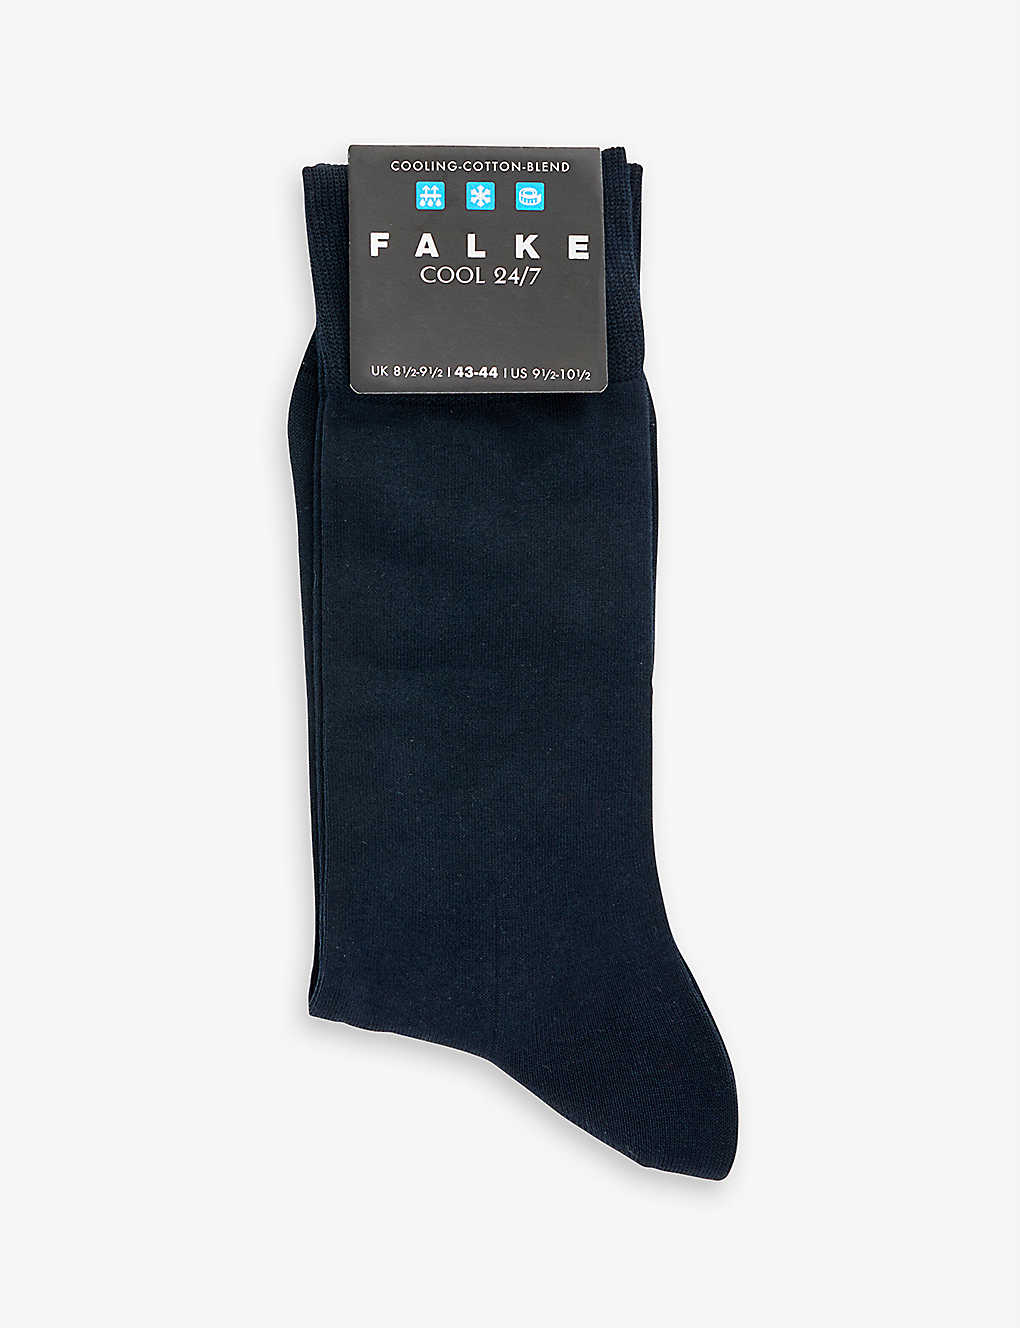 Falke Mens Dark Navy Cotton-blend Knitted Socks